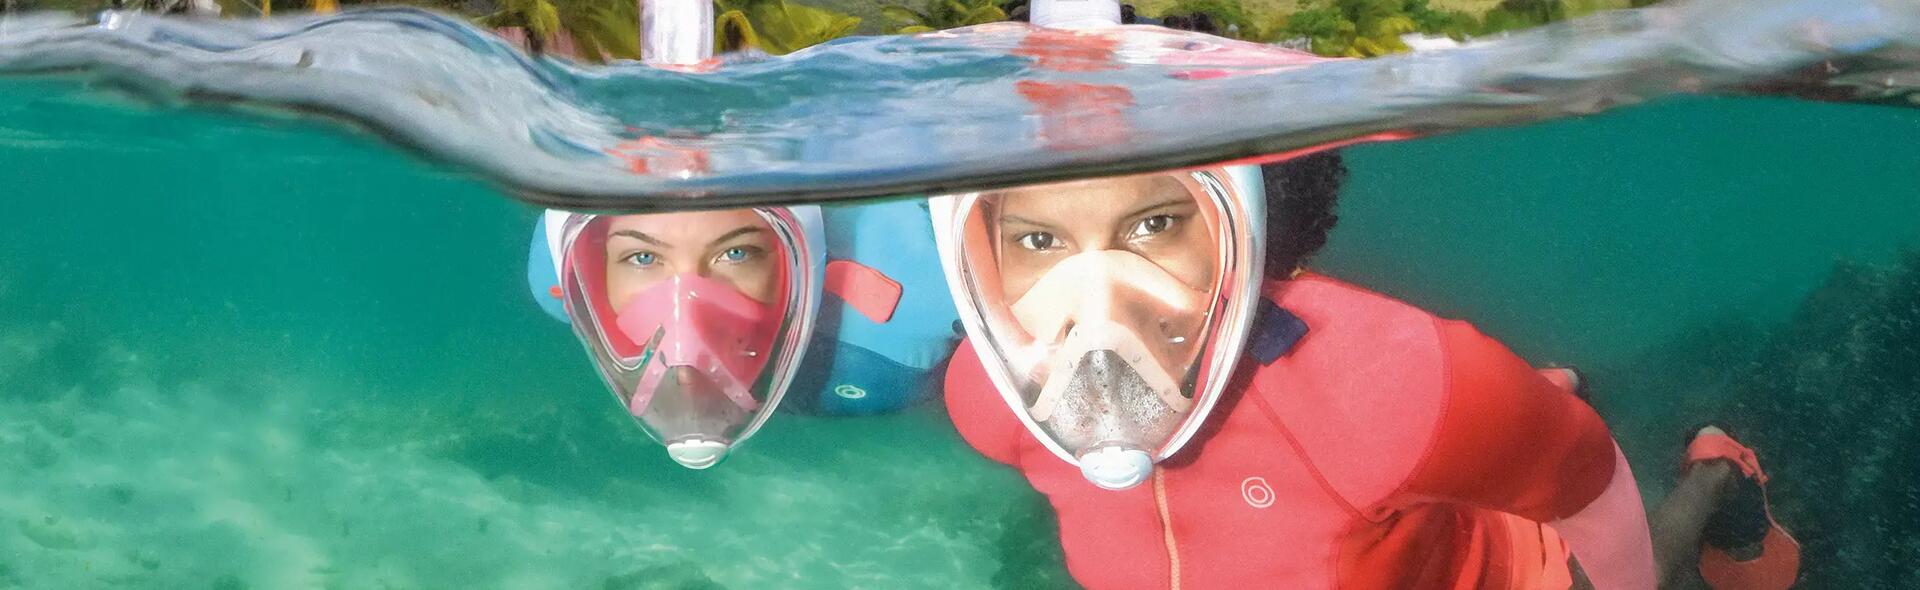 Perguntas mais frequentes sobre a máscara de snorkeling Easybreath 